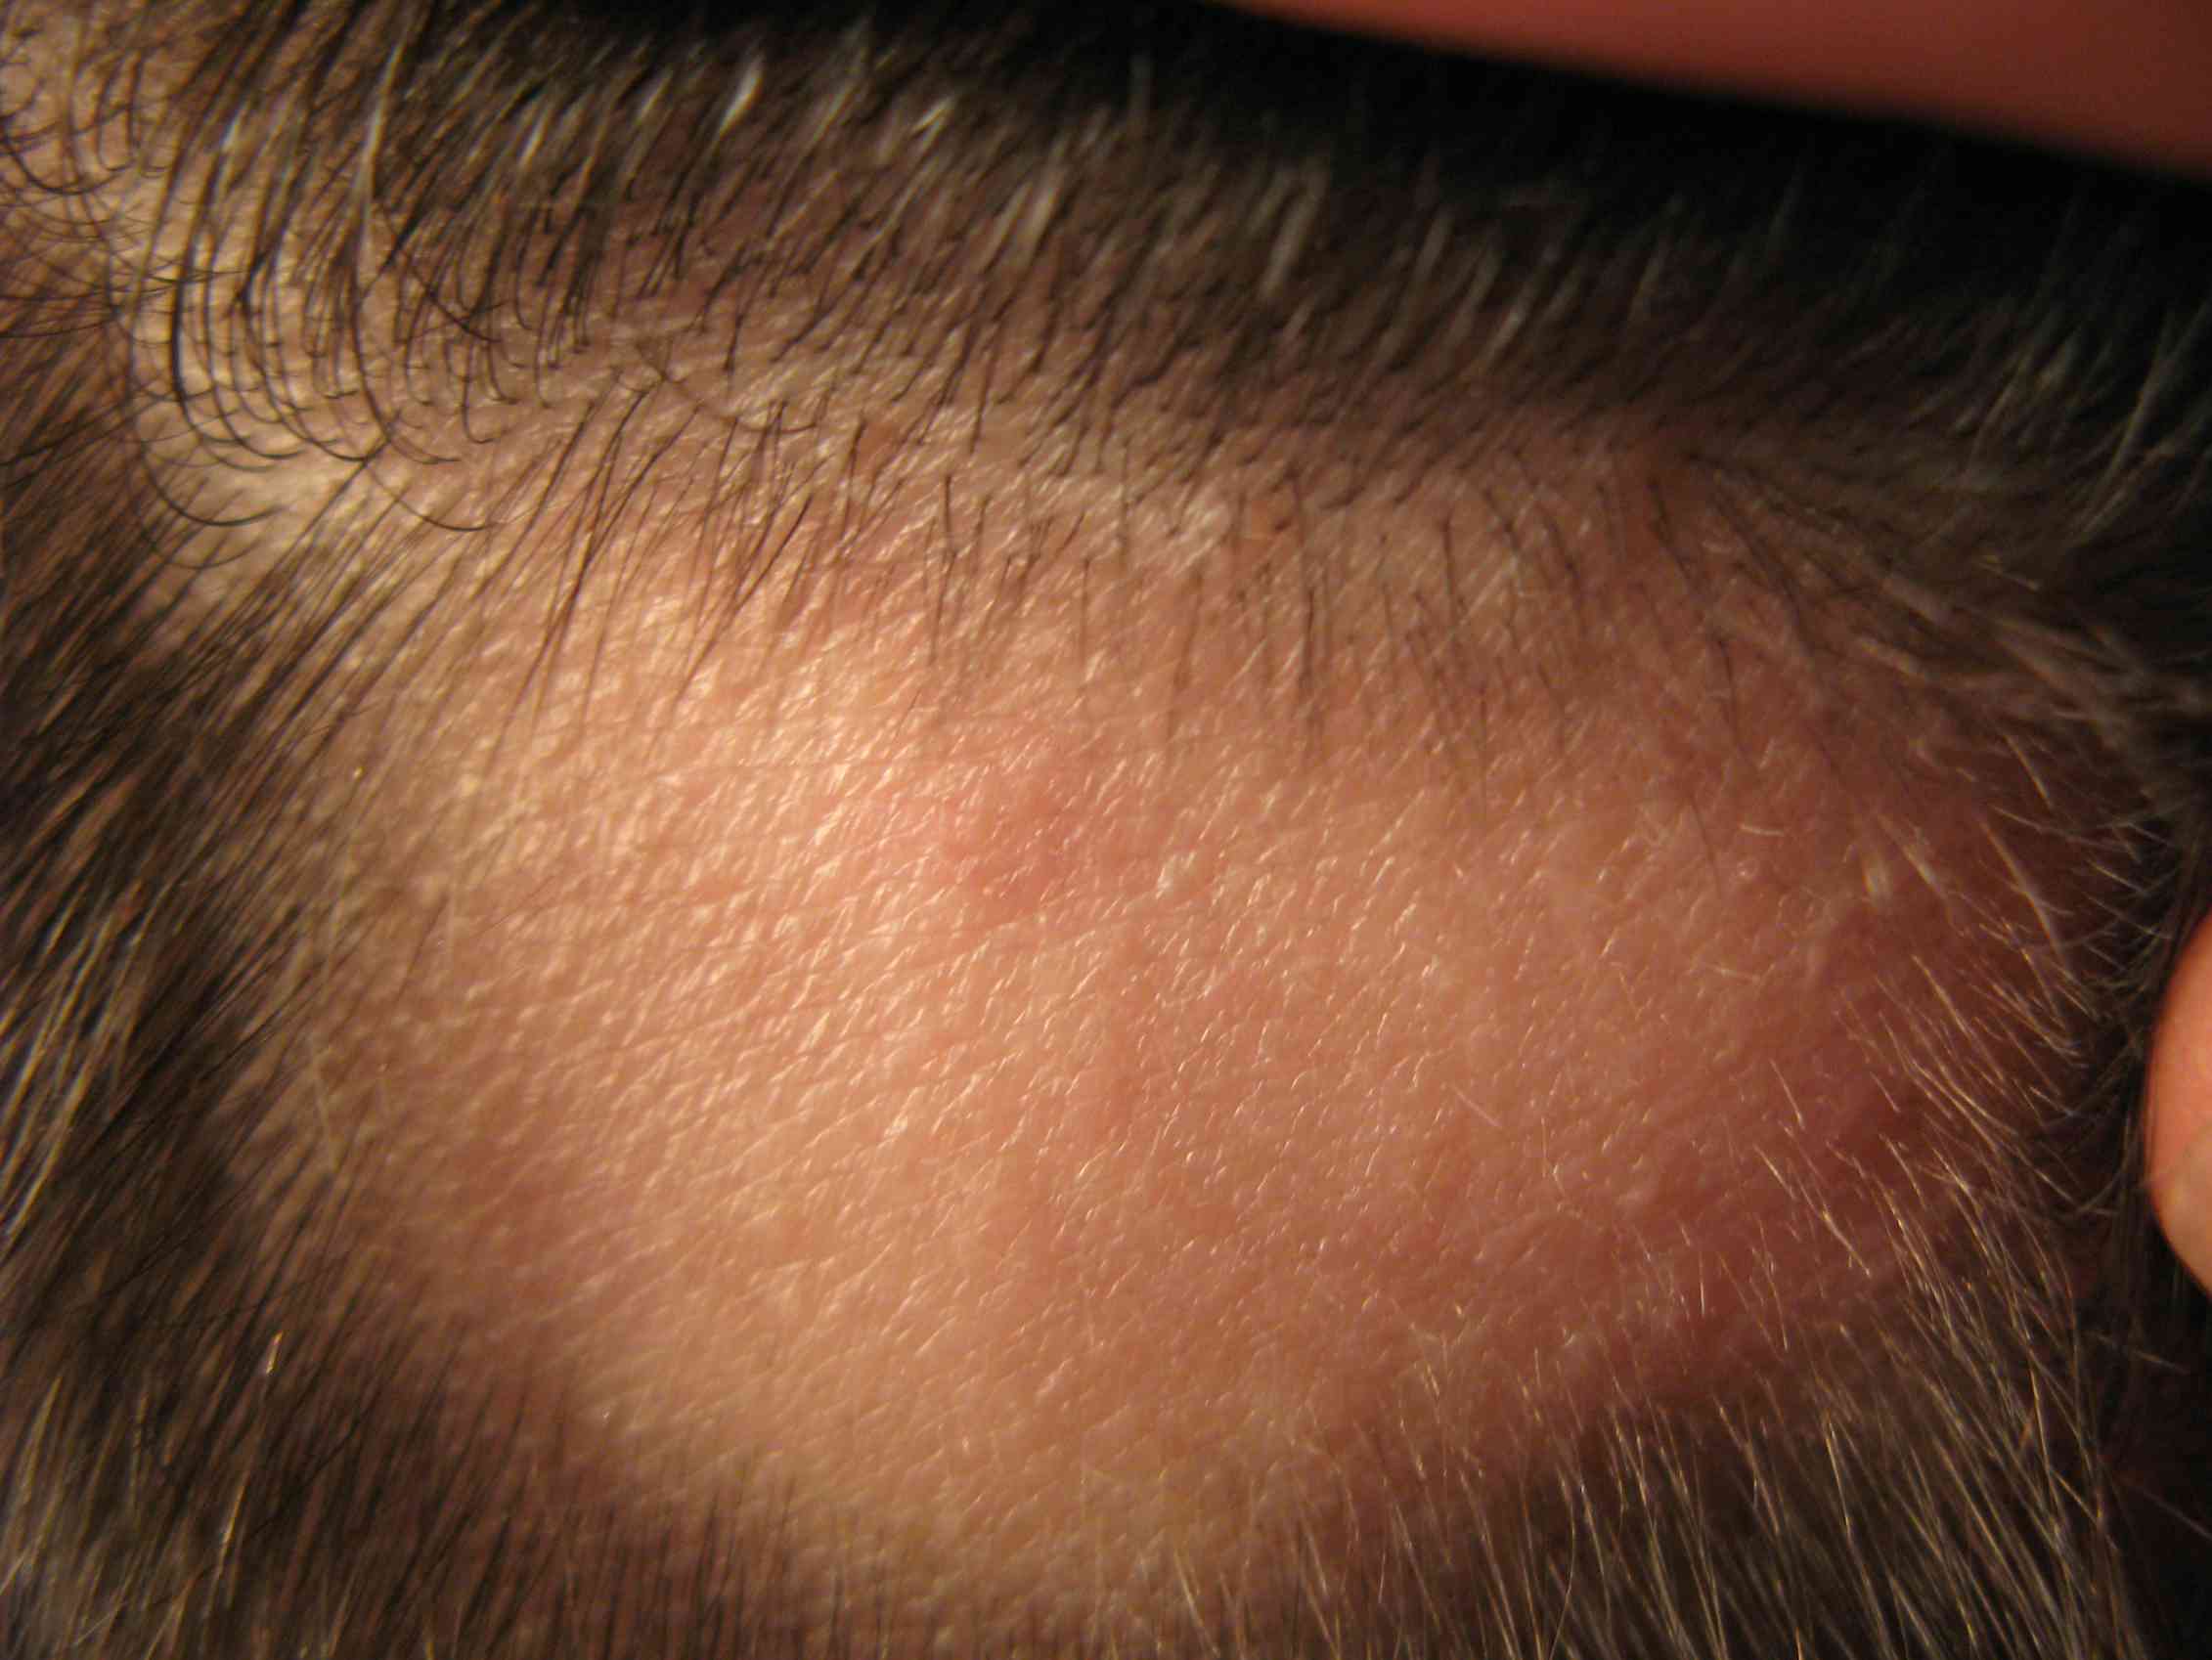 Волосы возле лба. Фолликулит, гипертрихоз. Очаговая алопеция (alopecia Areata). Трихофития (стригущий лишай).